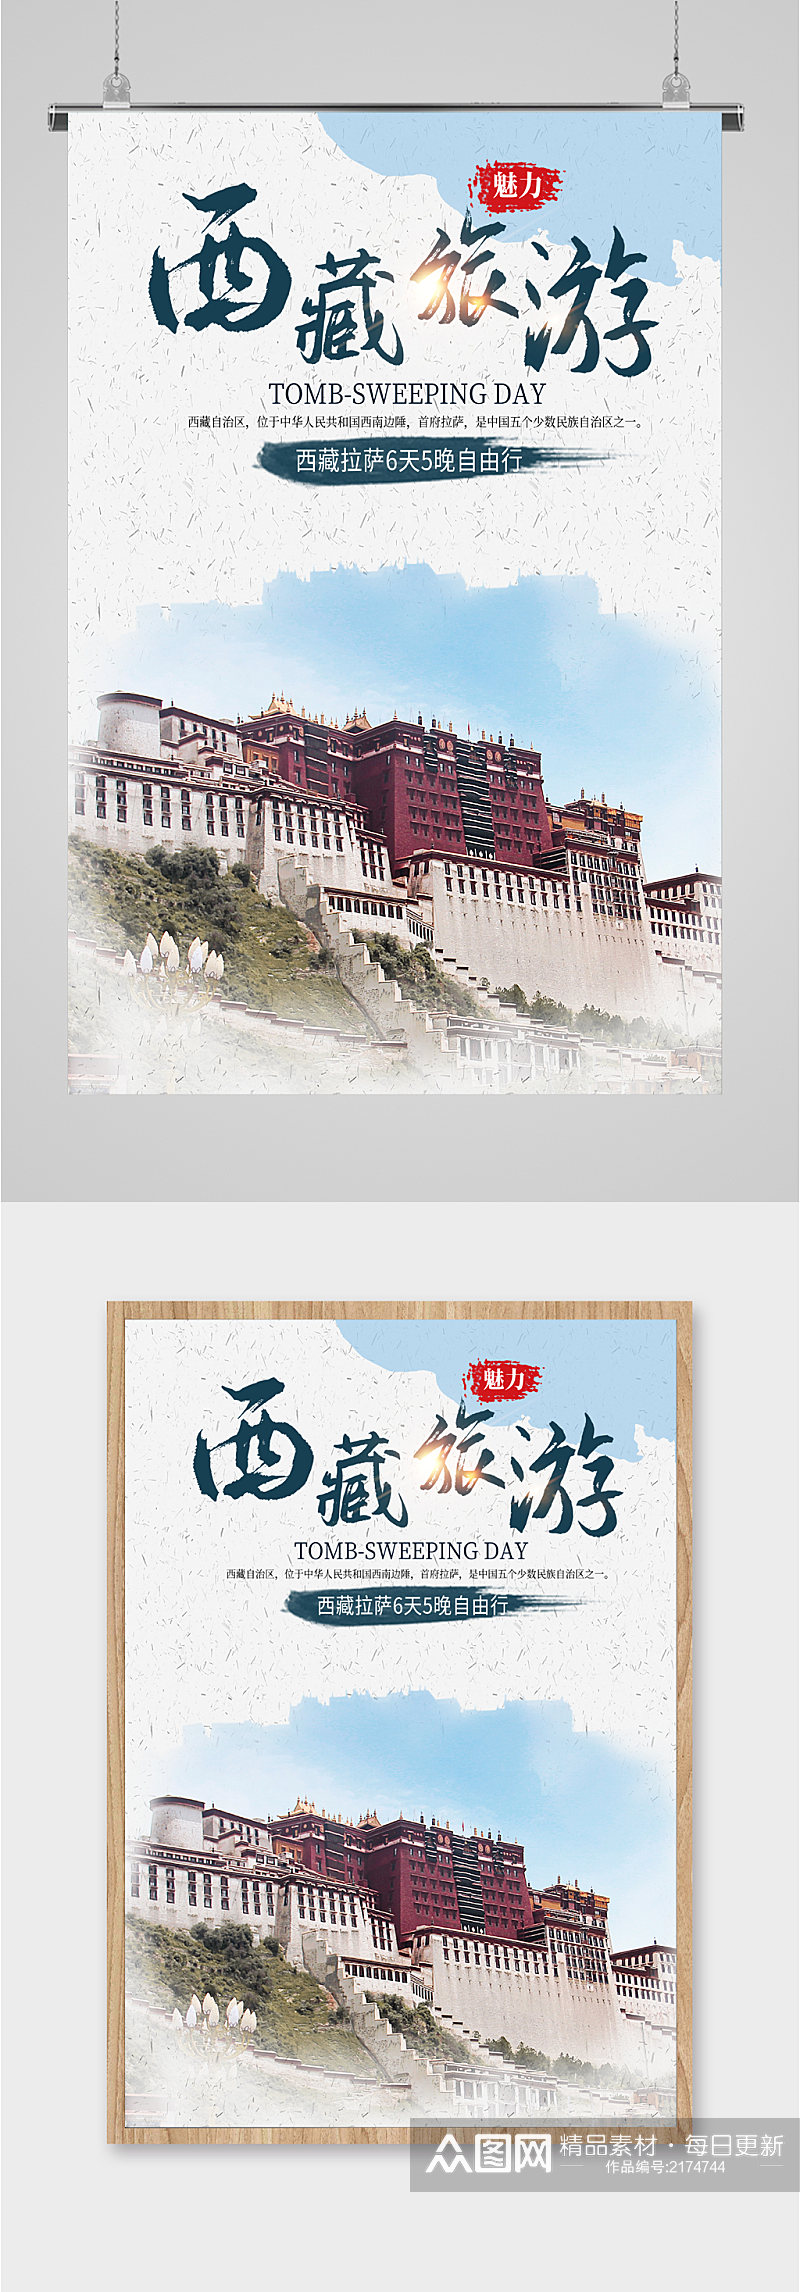 西藏风情旅游海报素材